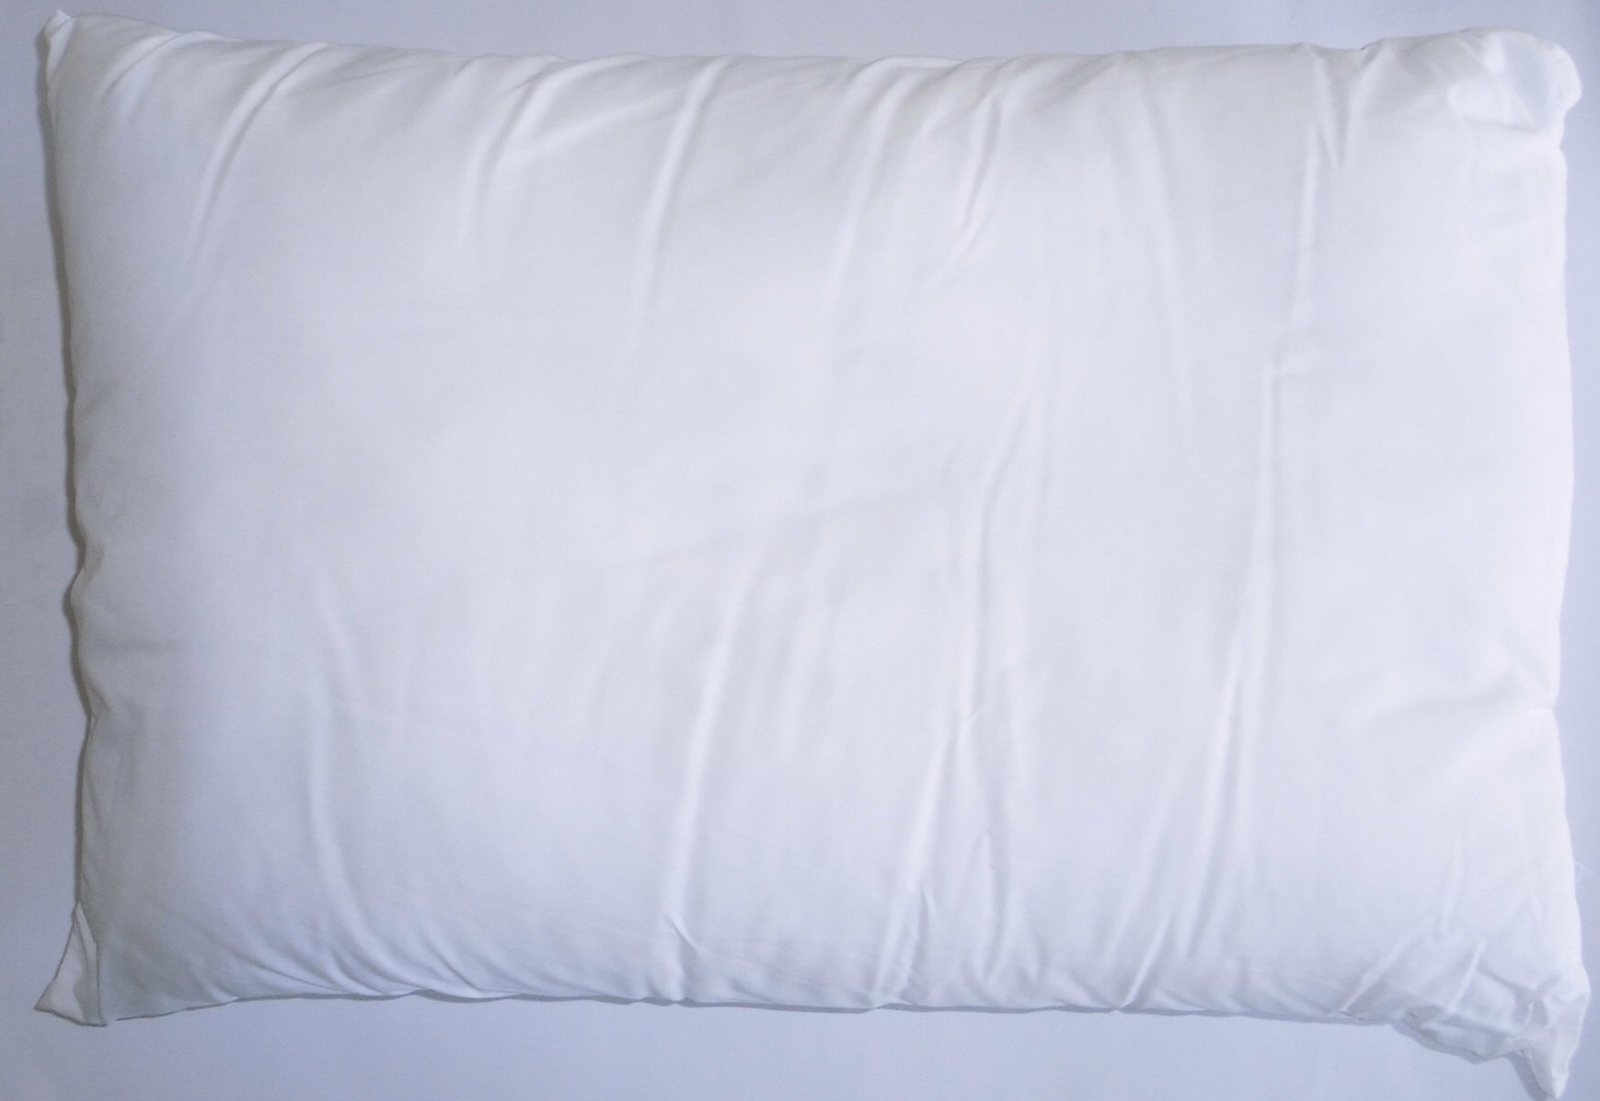 【在庫無し口コミ無し】ポリエステル枕 白 ヌード 35×50cm 高めボリュームタイプ